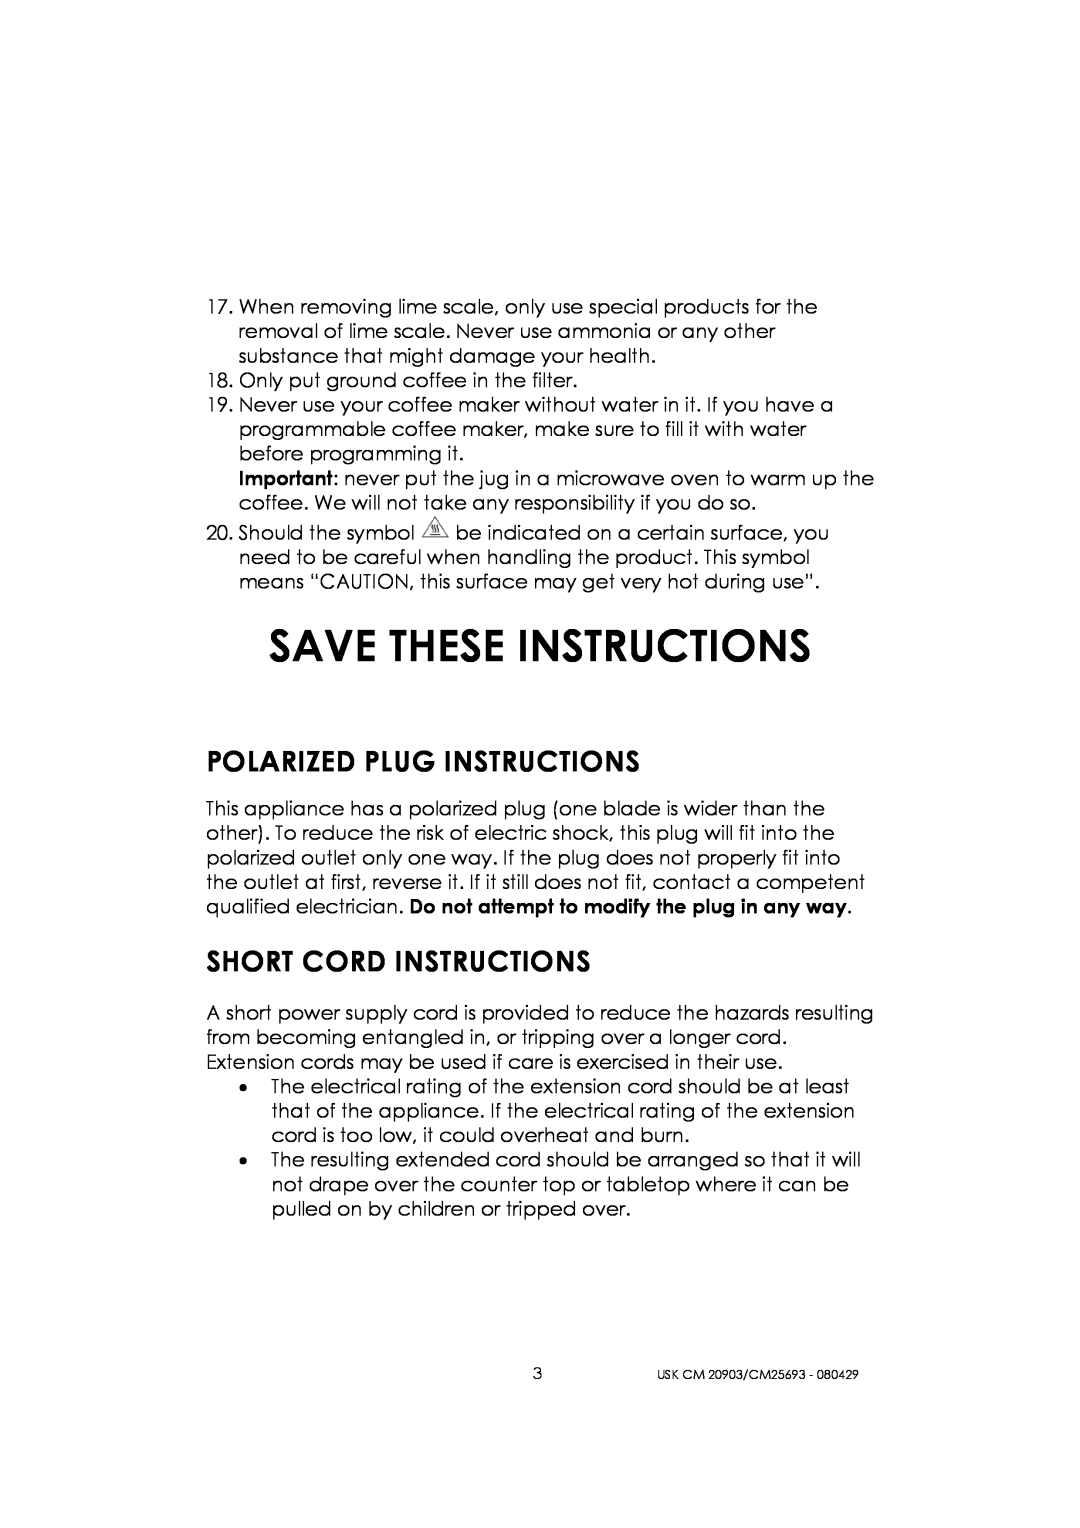 Kalorik CM 20903, CM 25693 manual Save These Instructions, Polarized Plug Instructions, Short Cord Instructions 